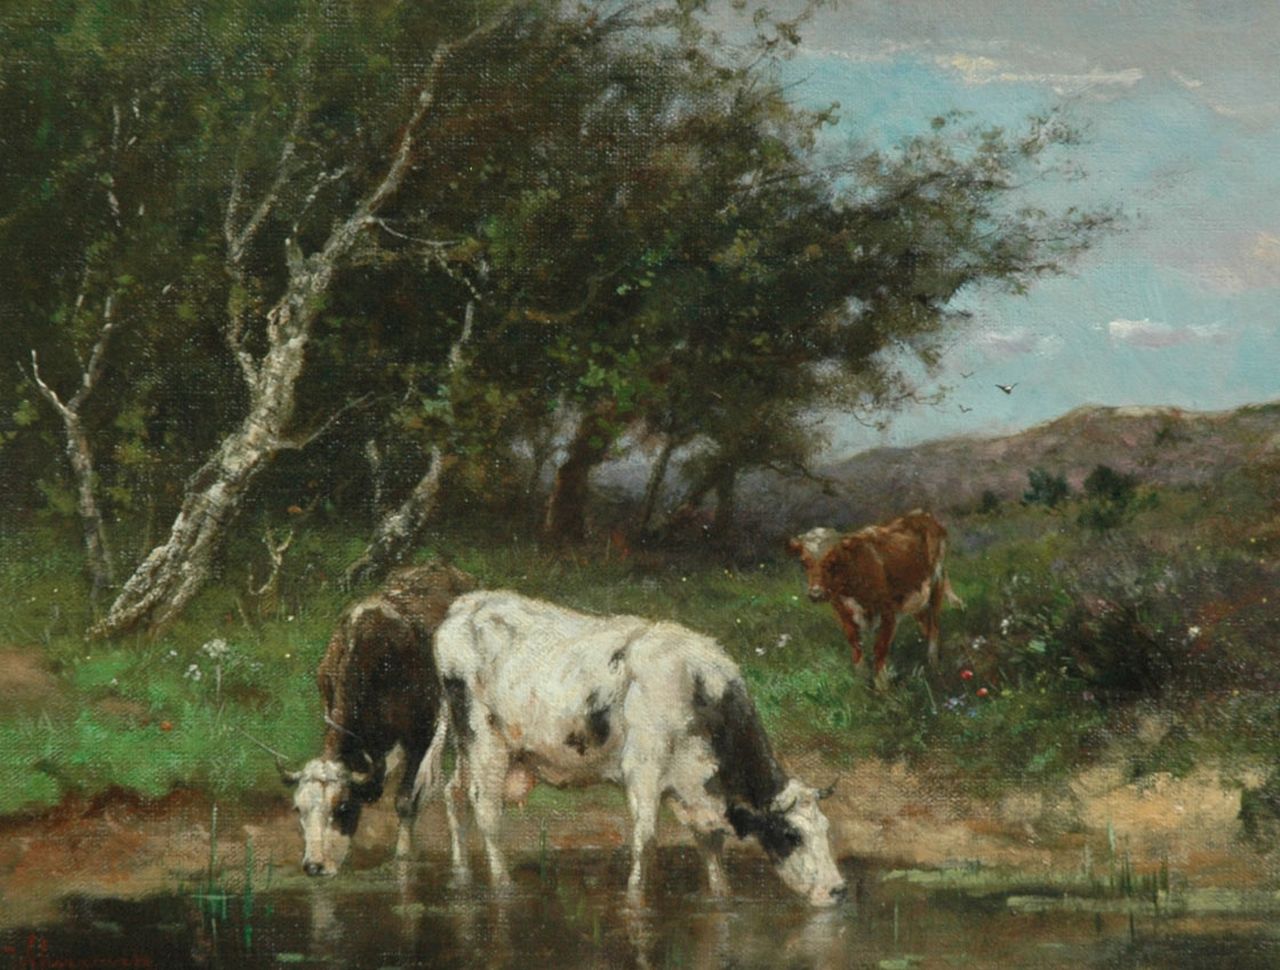 Scherrewitz J.F.C.  | Johan Frederik Cornelis Scherrewitz, Drinkende koeien, olieverf op doek 30,5 x 40,2 cm, gesigneerd linksonder